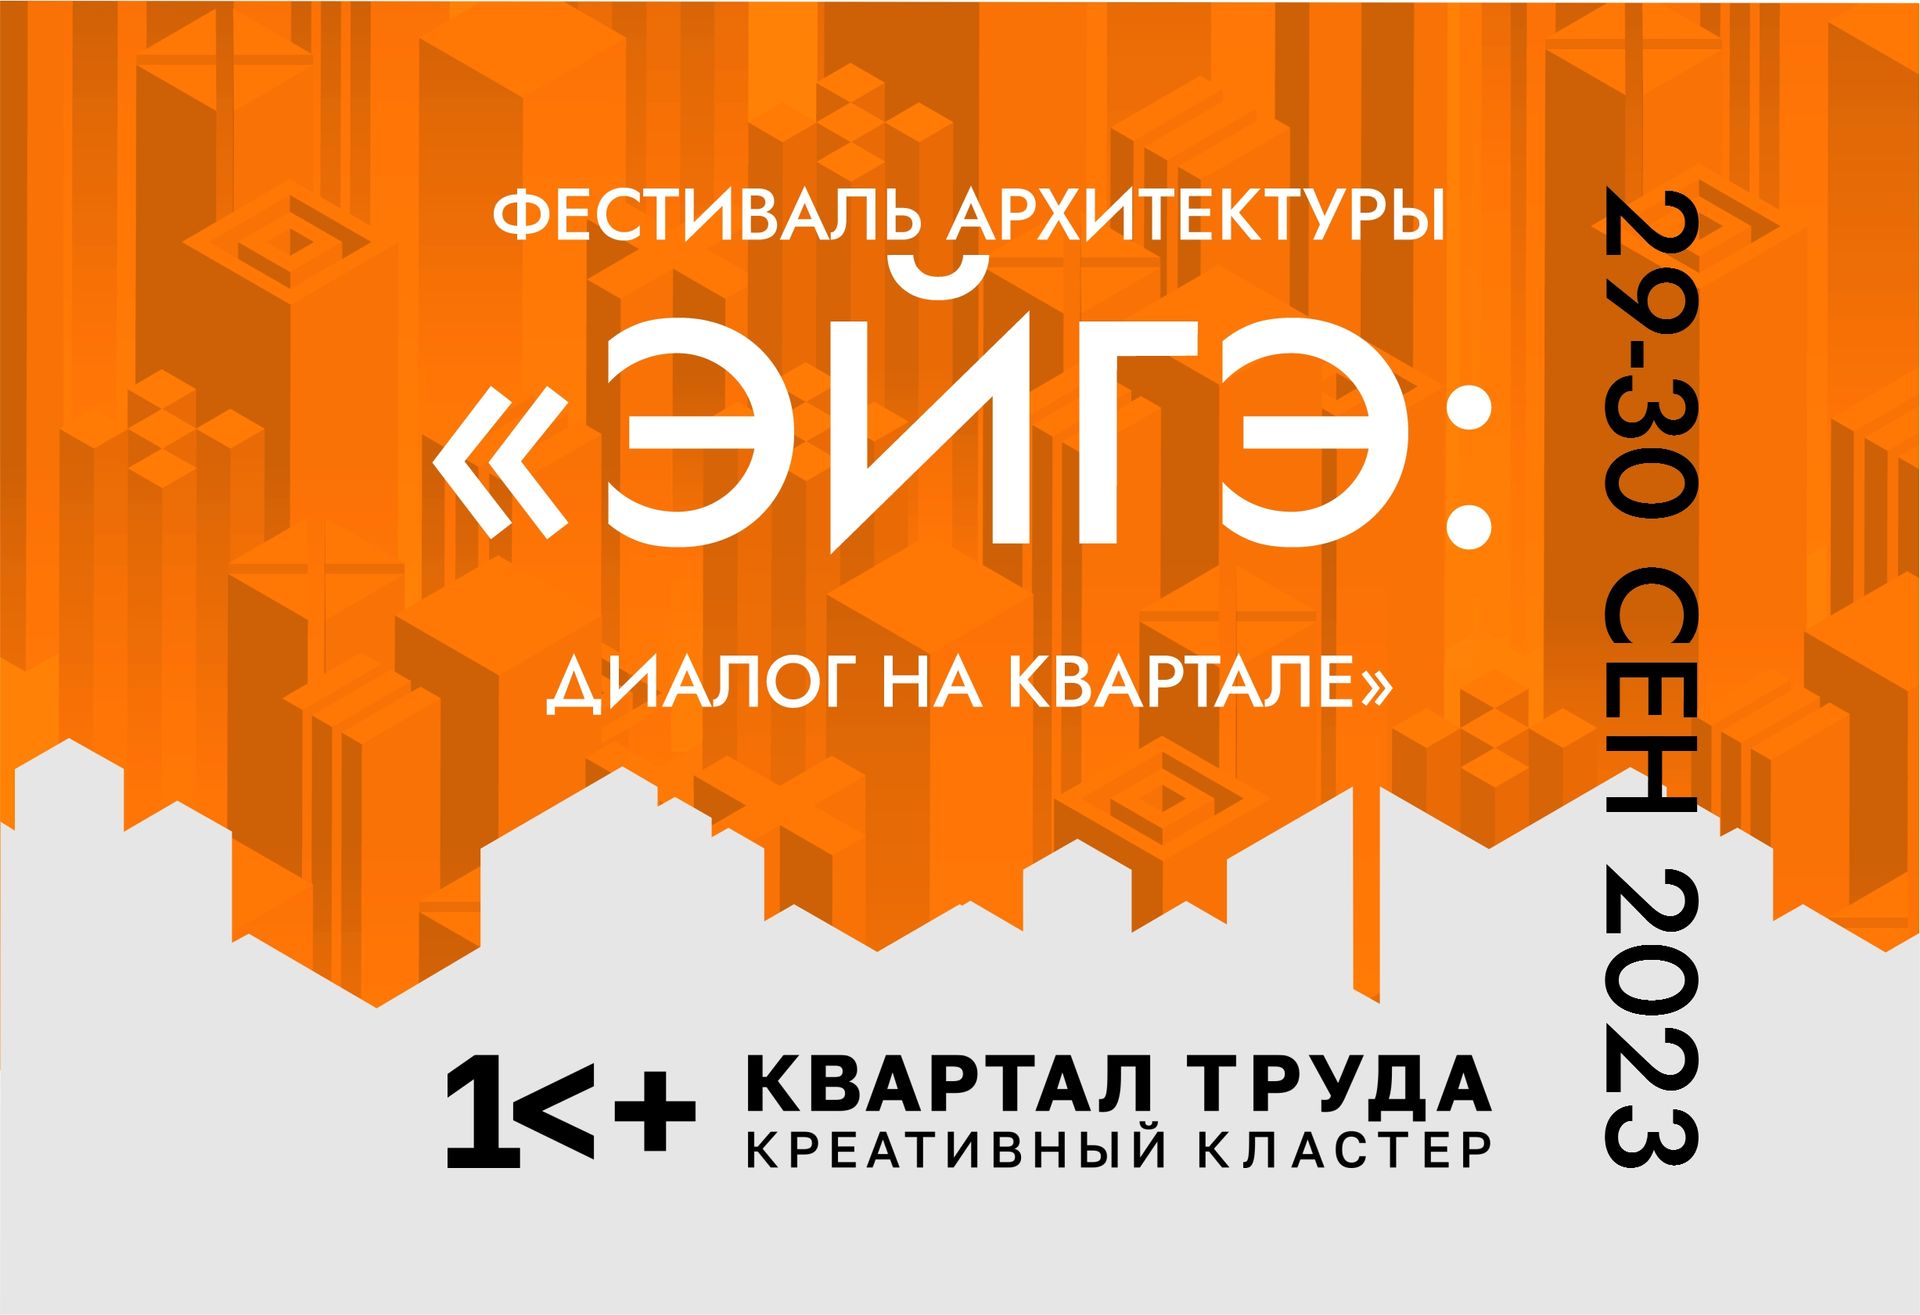 Архитектурный фестиваль "ЭЙГЭ: ДИАЛОГ НА КВАРТАЛЕ" состоится в Якутске